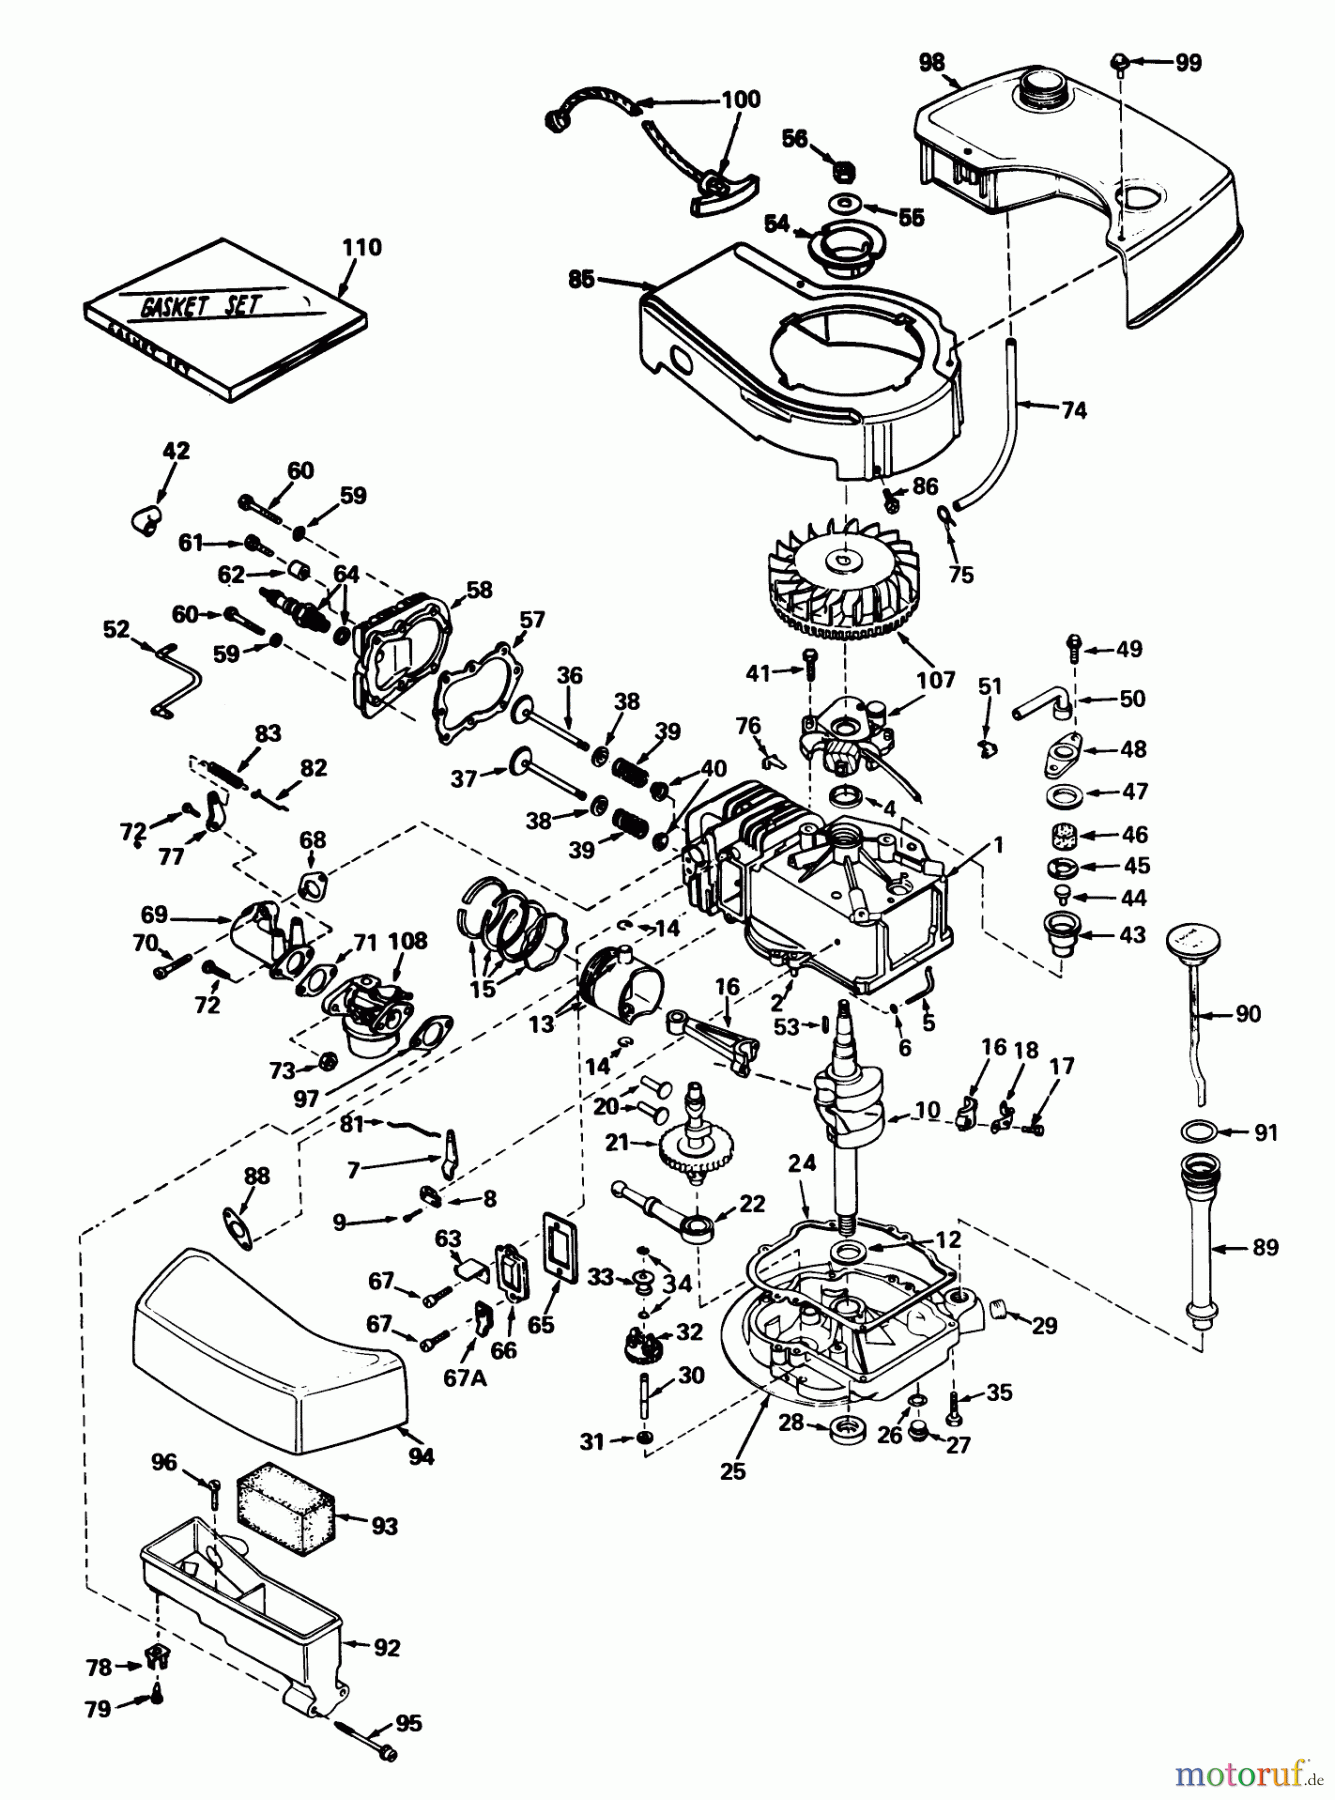  Toro Neu Mowers, Walk-Behind Seite 1 20660 - Toro Lawnmower, 1975 (5000001-5999999) ENGINE TECUMSEH MODEL NO. TNT 120-12001